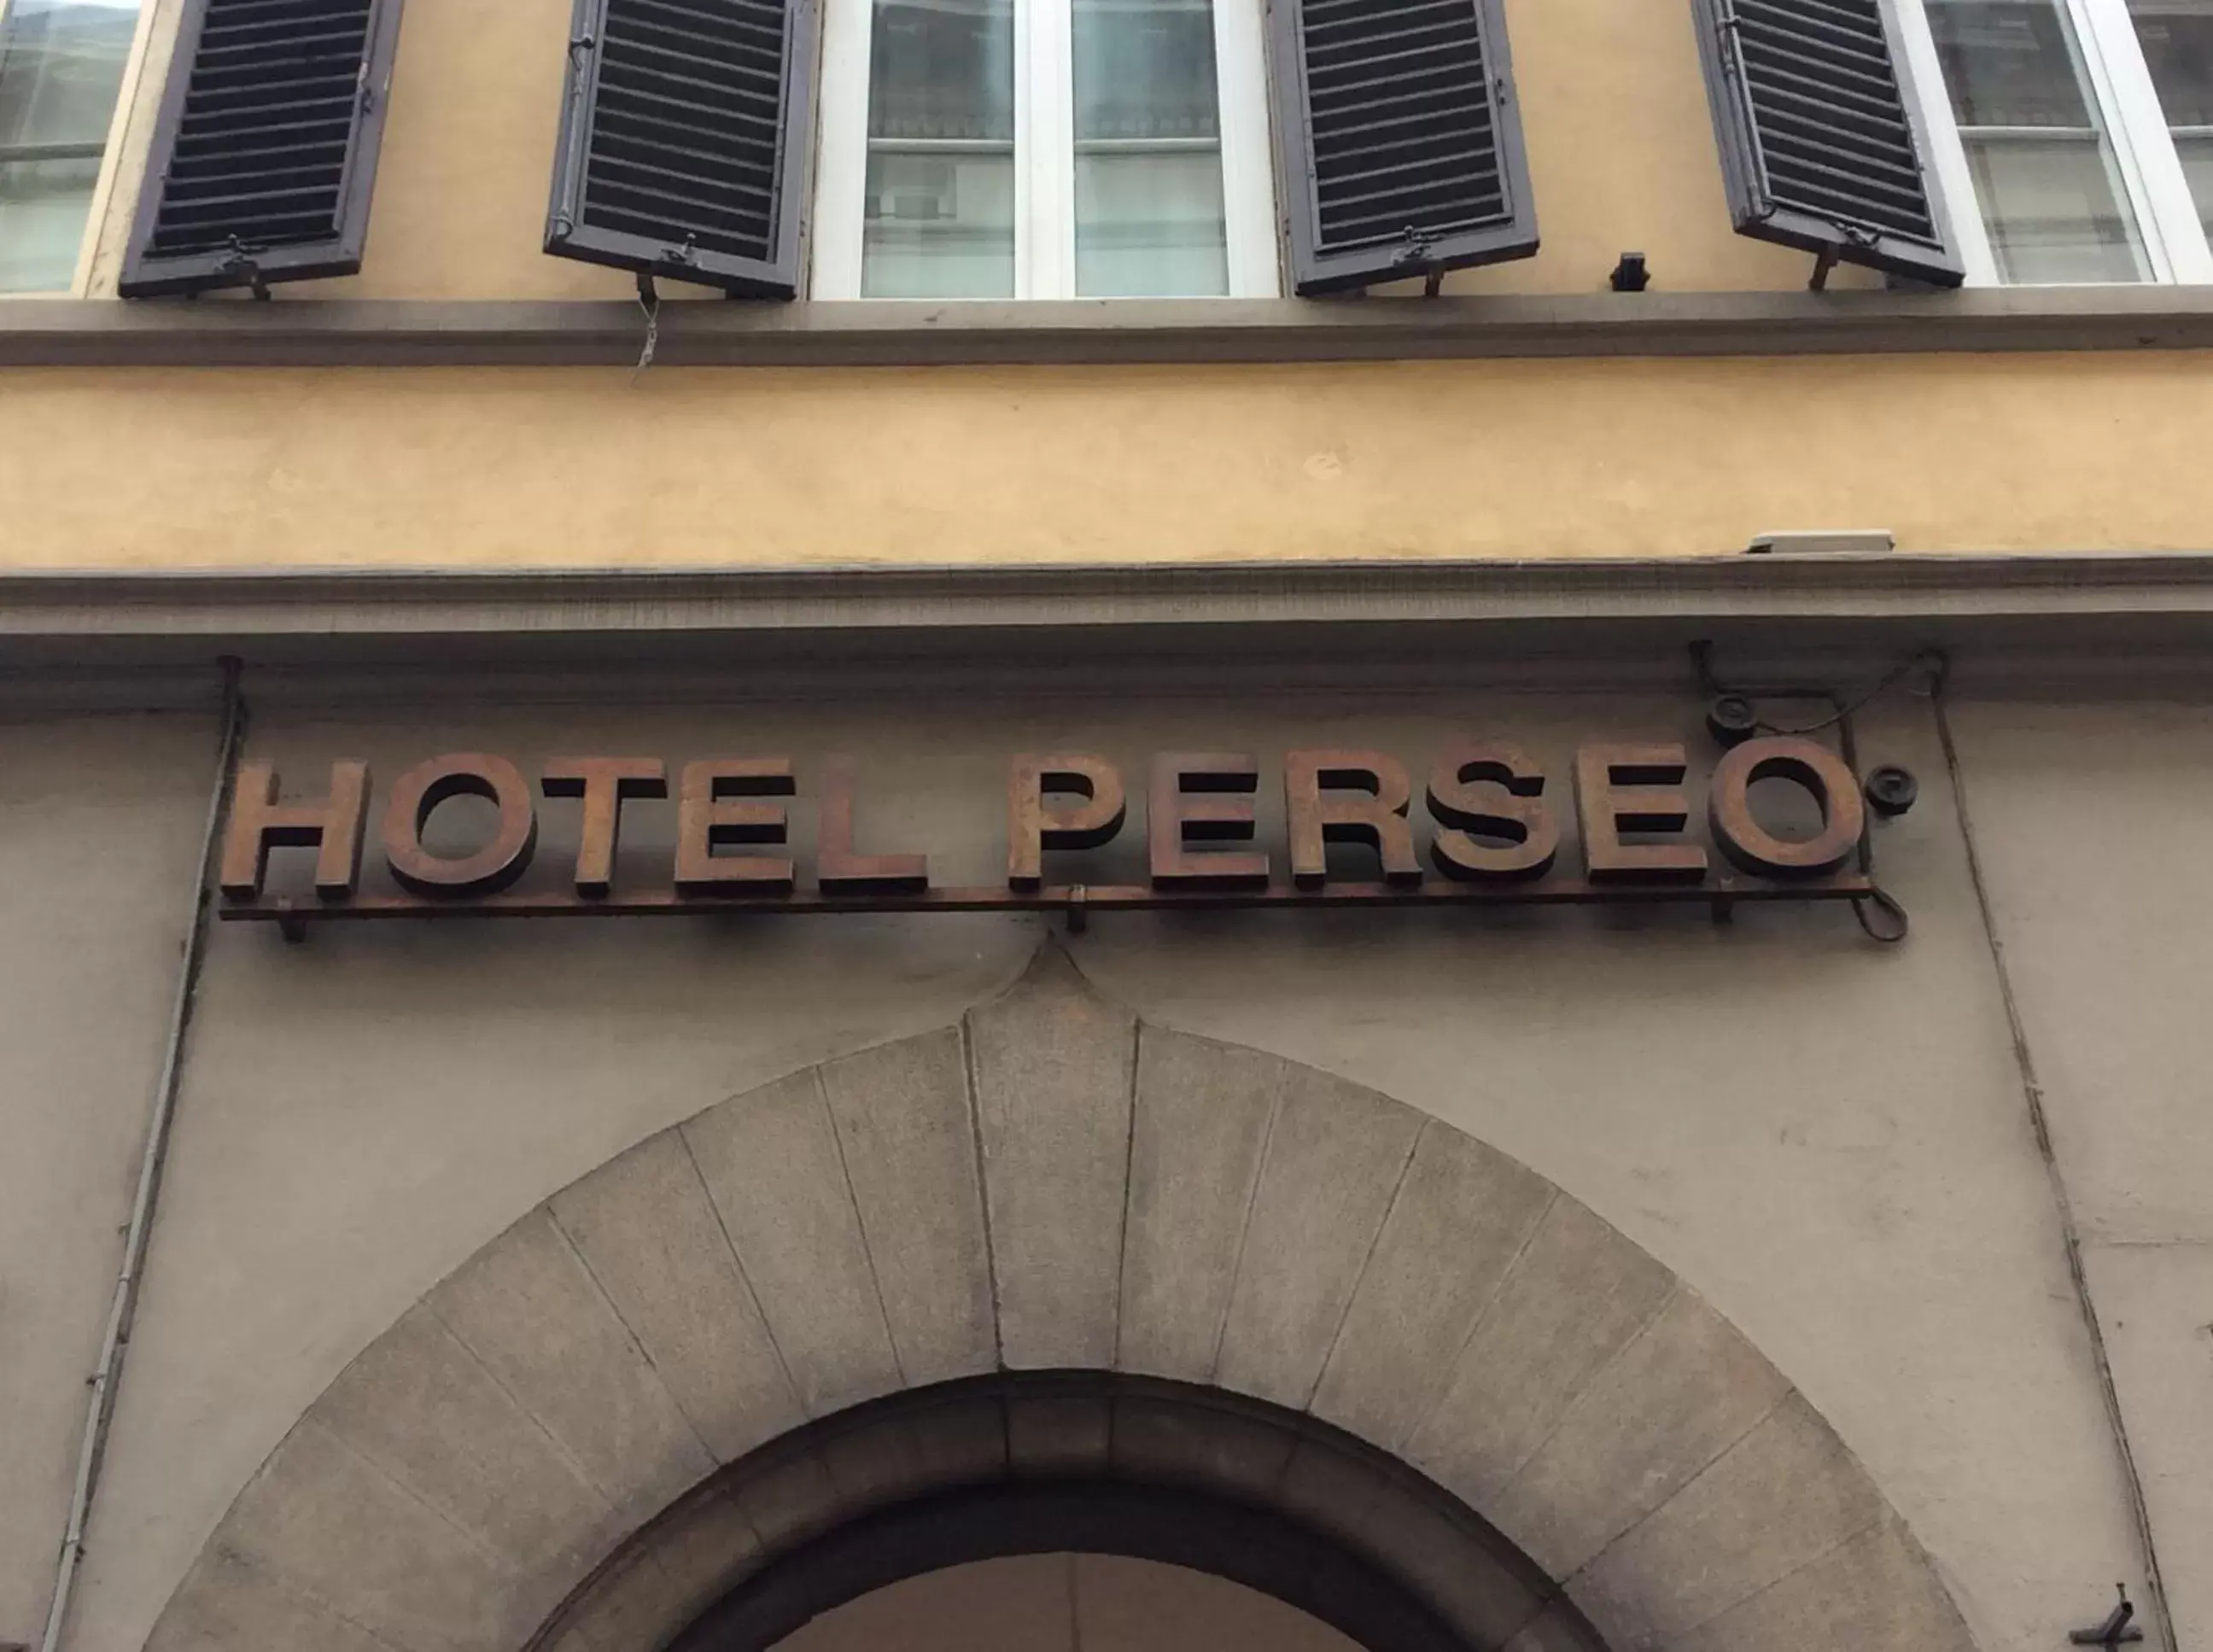 Facade/Entrance in Hotel Perseo